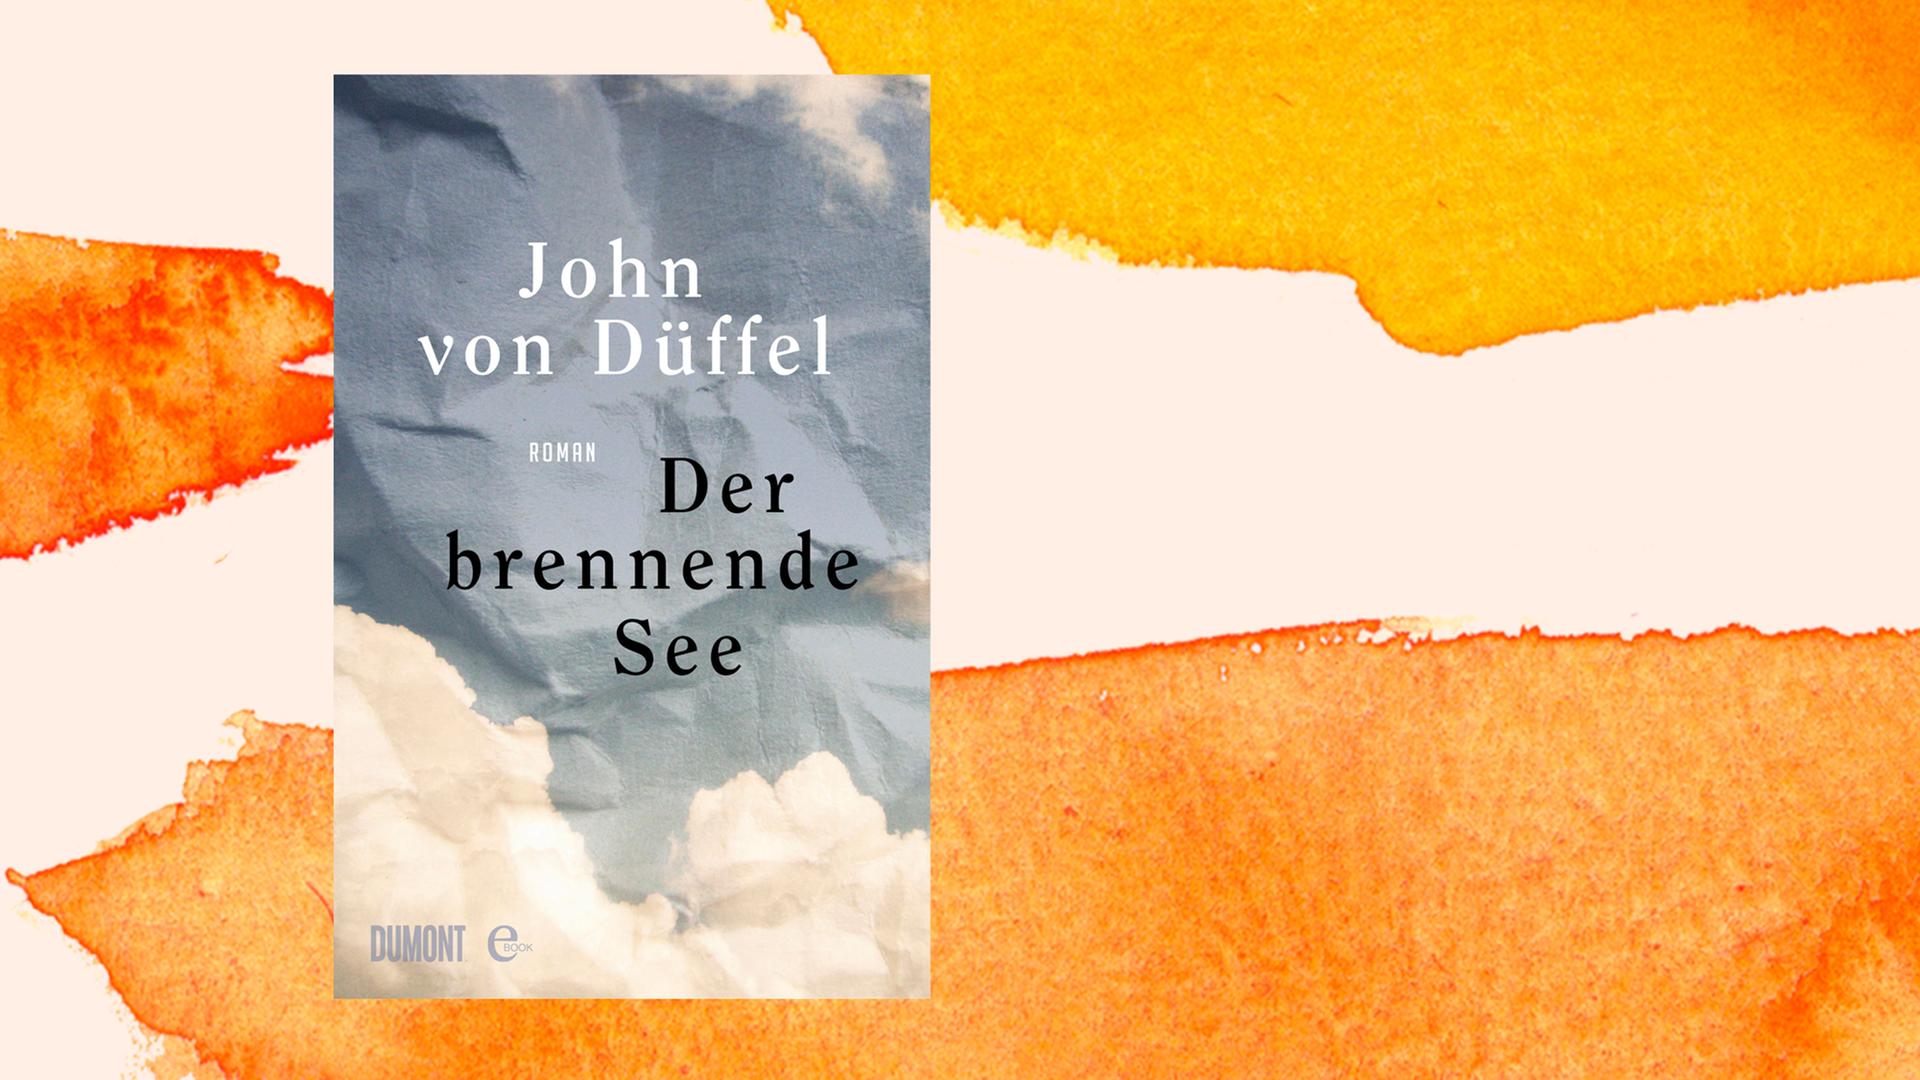 Zu sehen ist das Cover des Buches "Der brennende See" von John von Düffel.